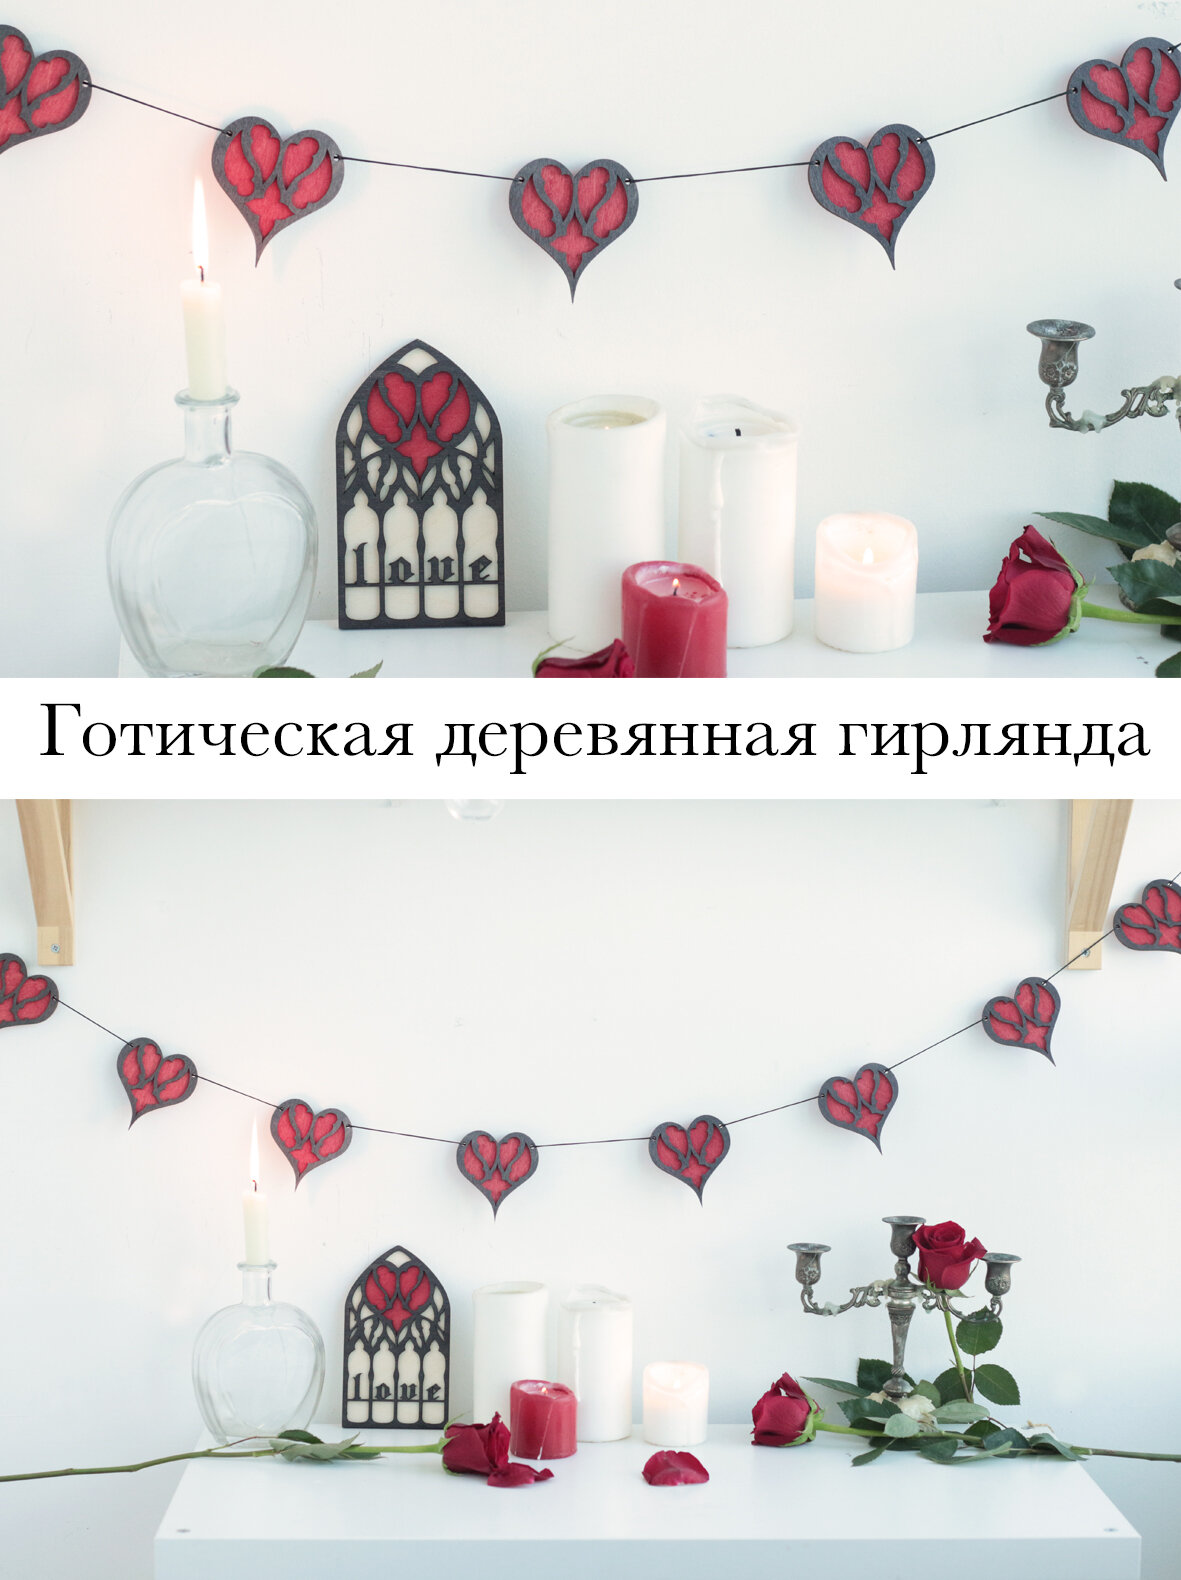 Гирлянда - готический декор на 14 февраля, гирлянда с сердечками на день святого Валентина